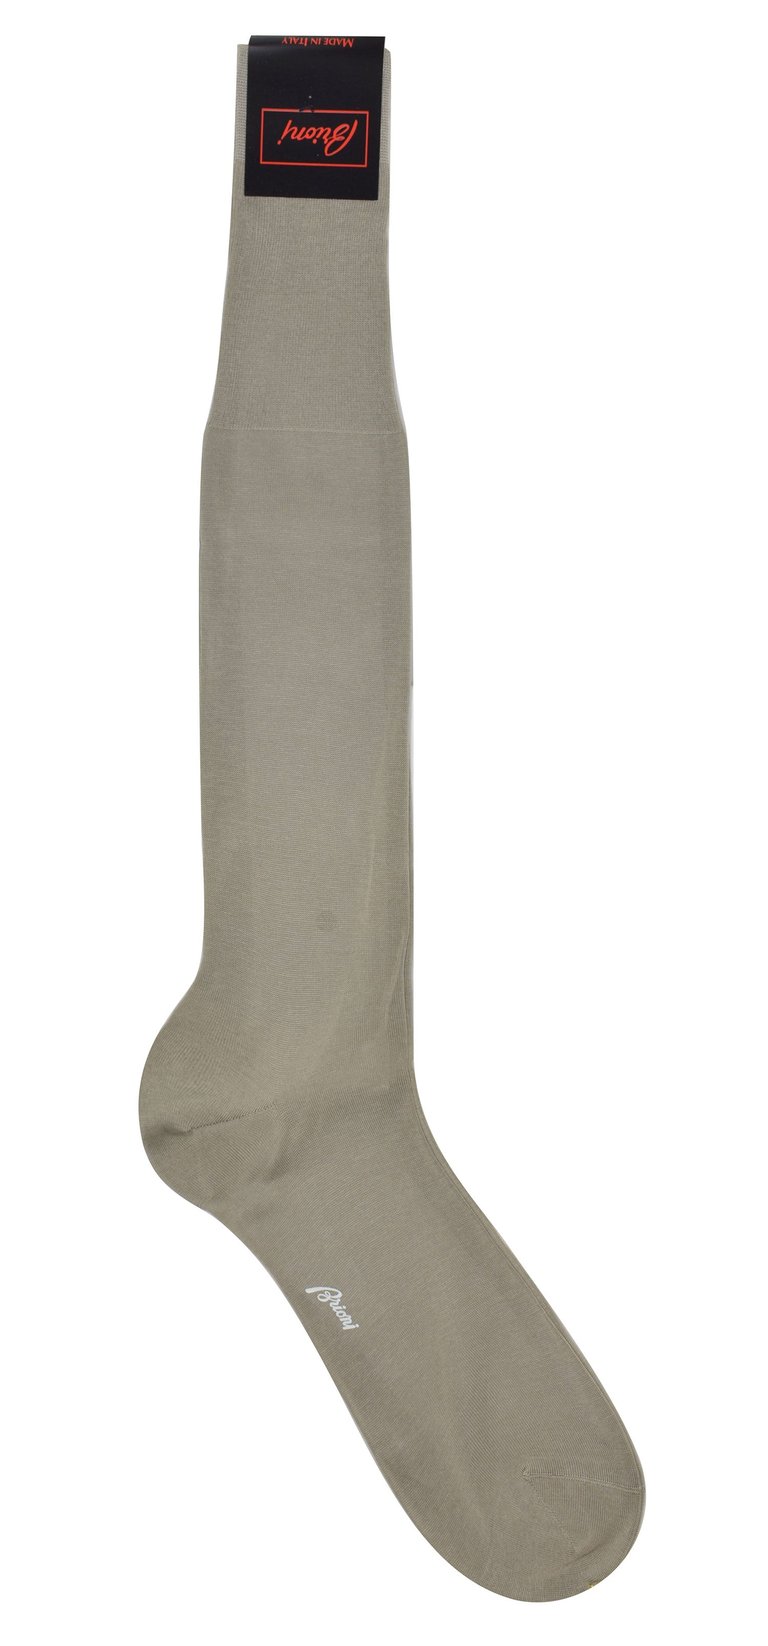 Men's 100% Cotton Light Taupe Long Socks - Beige